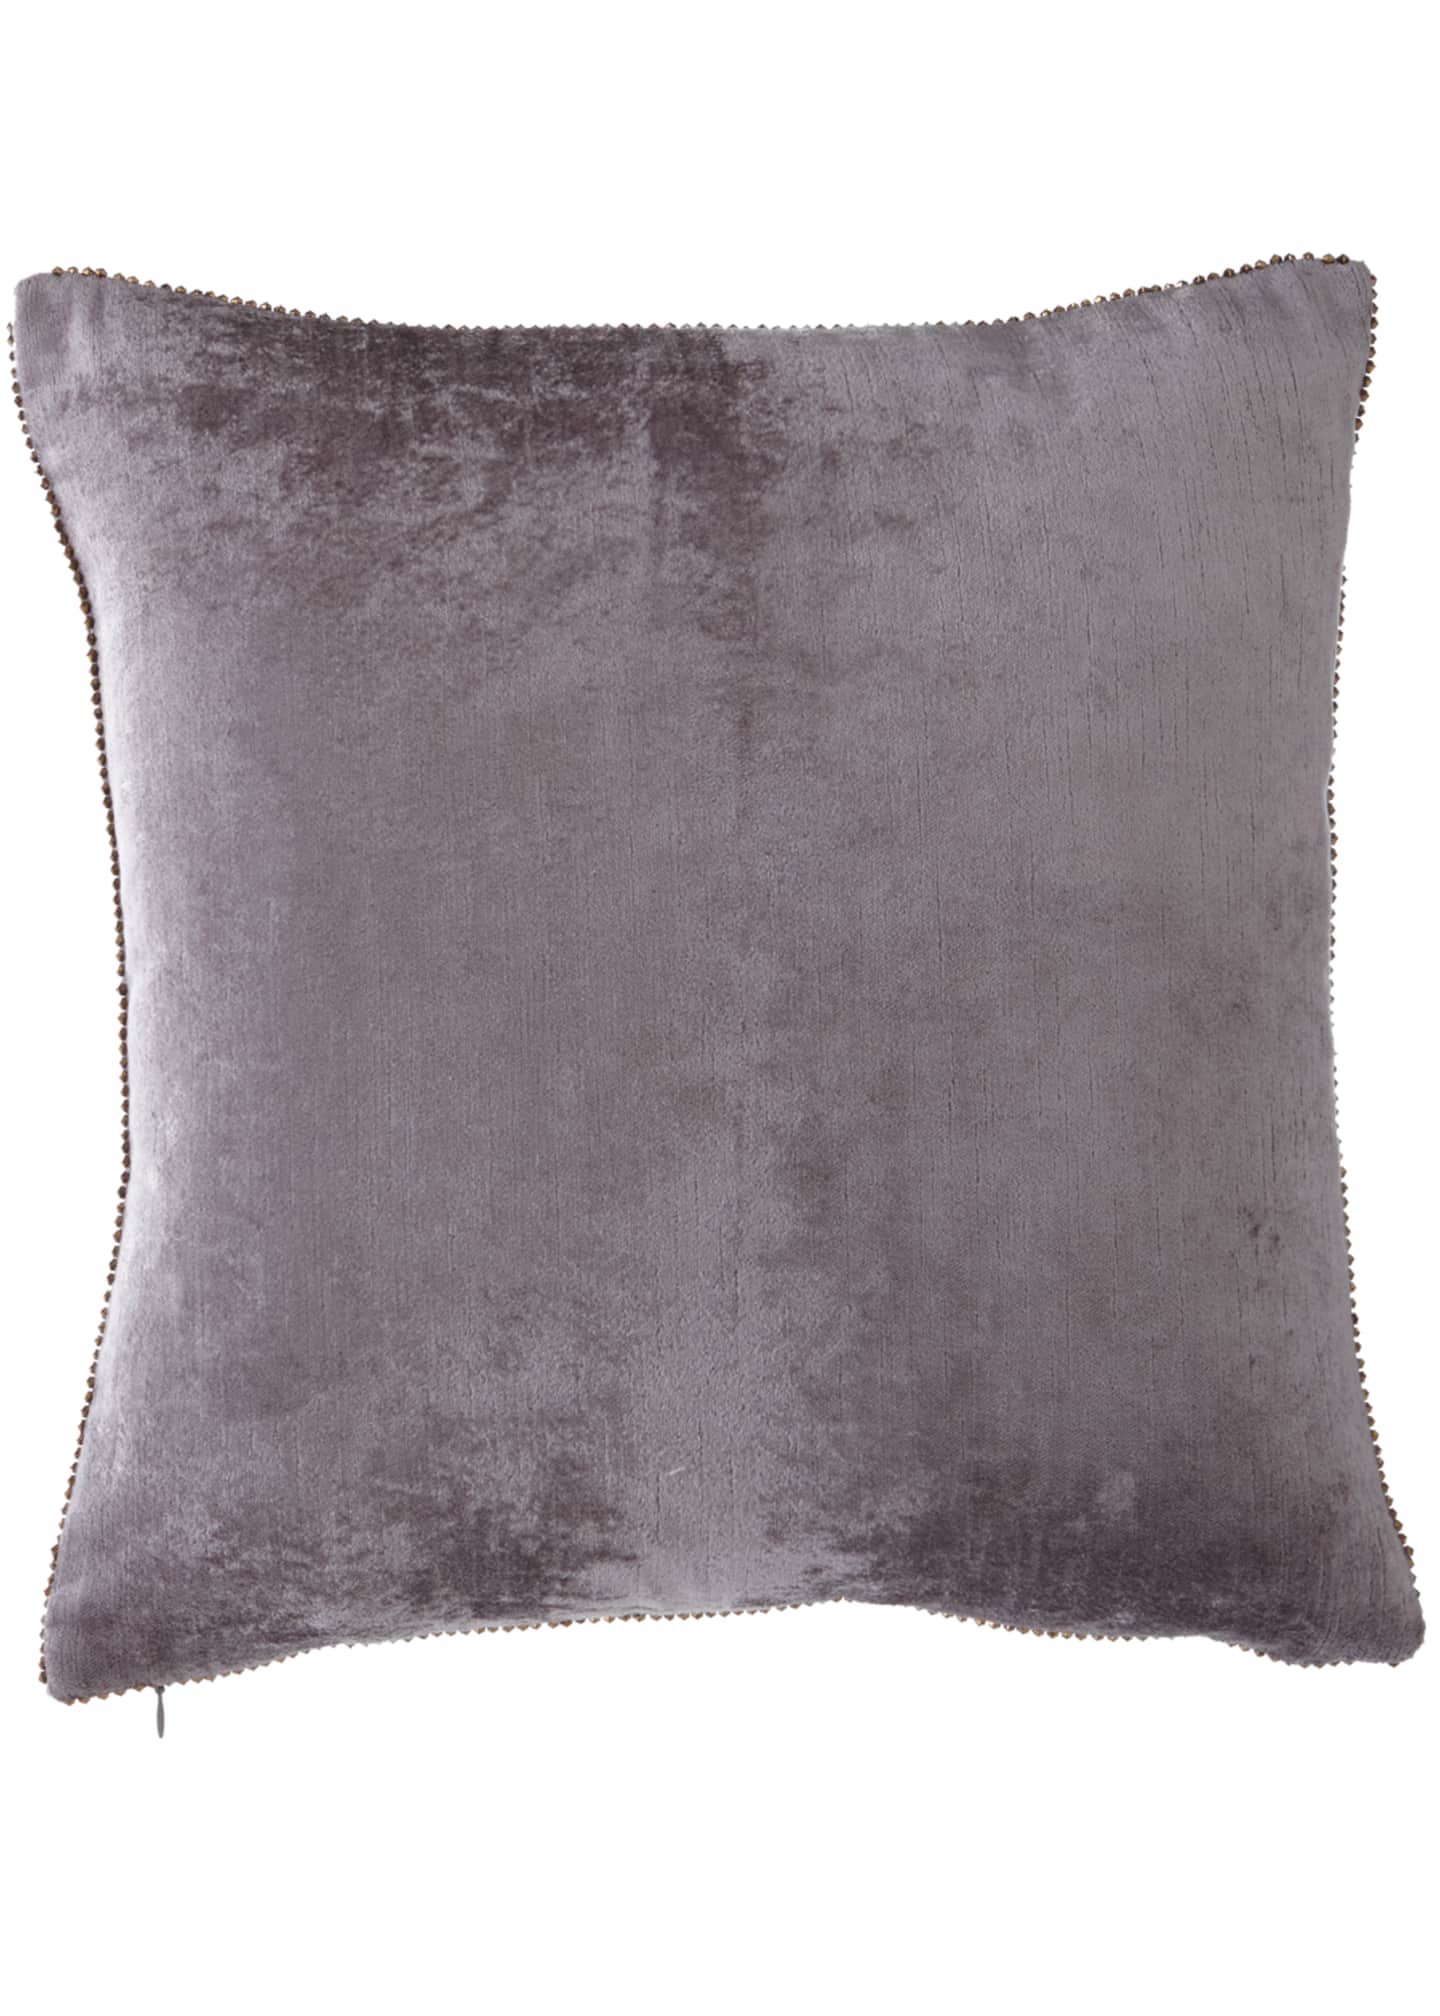 Michael Aram Beaded-Edge Velvet Pillow in Gray, 18